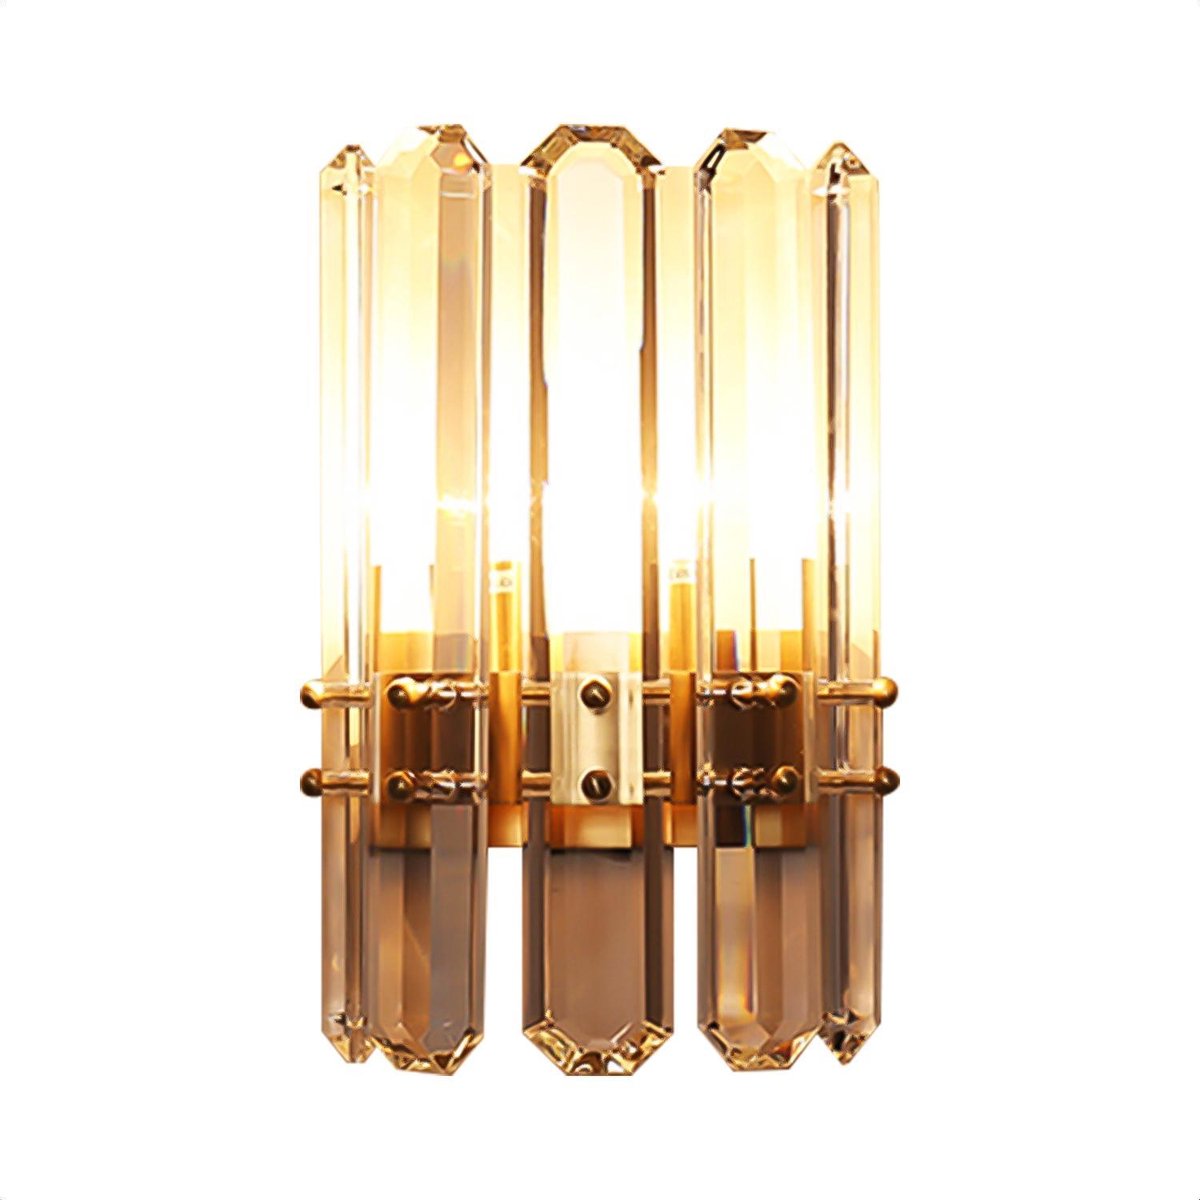 Wandlamp - Kristallen Binnen Wandlamp Goud - Decoratie voor Binnenhuis - 20x30cm - KL-001